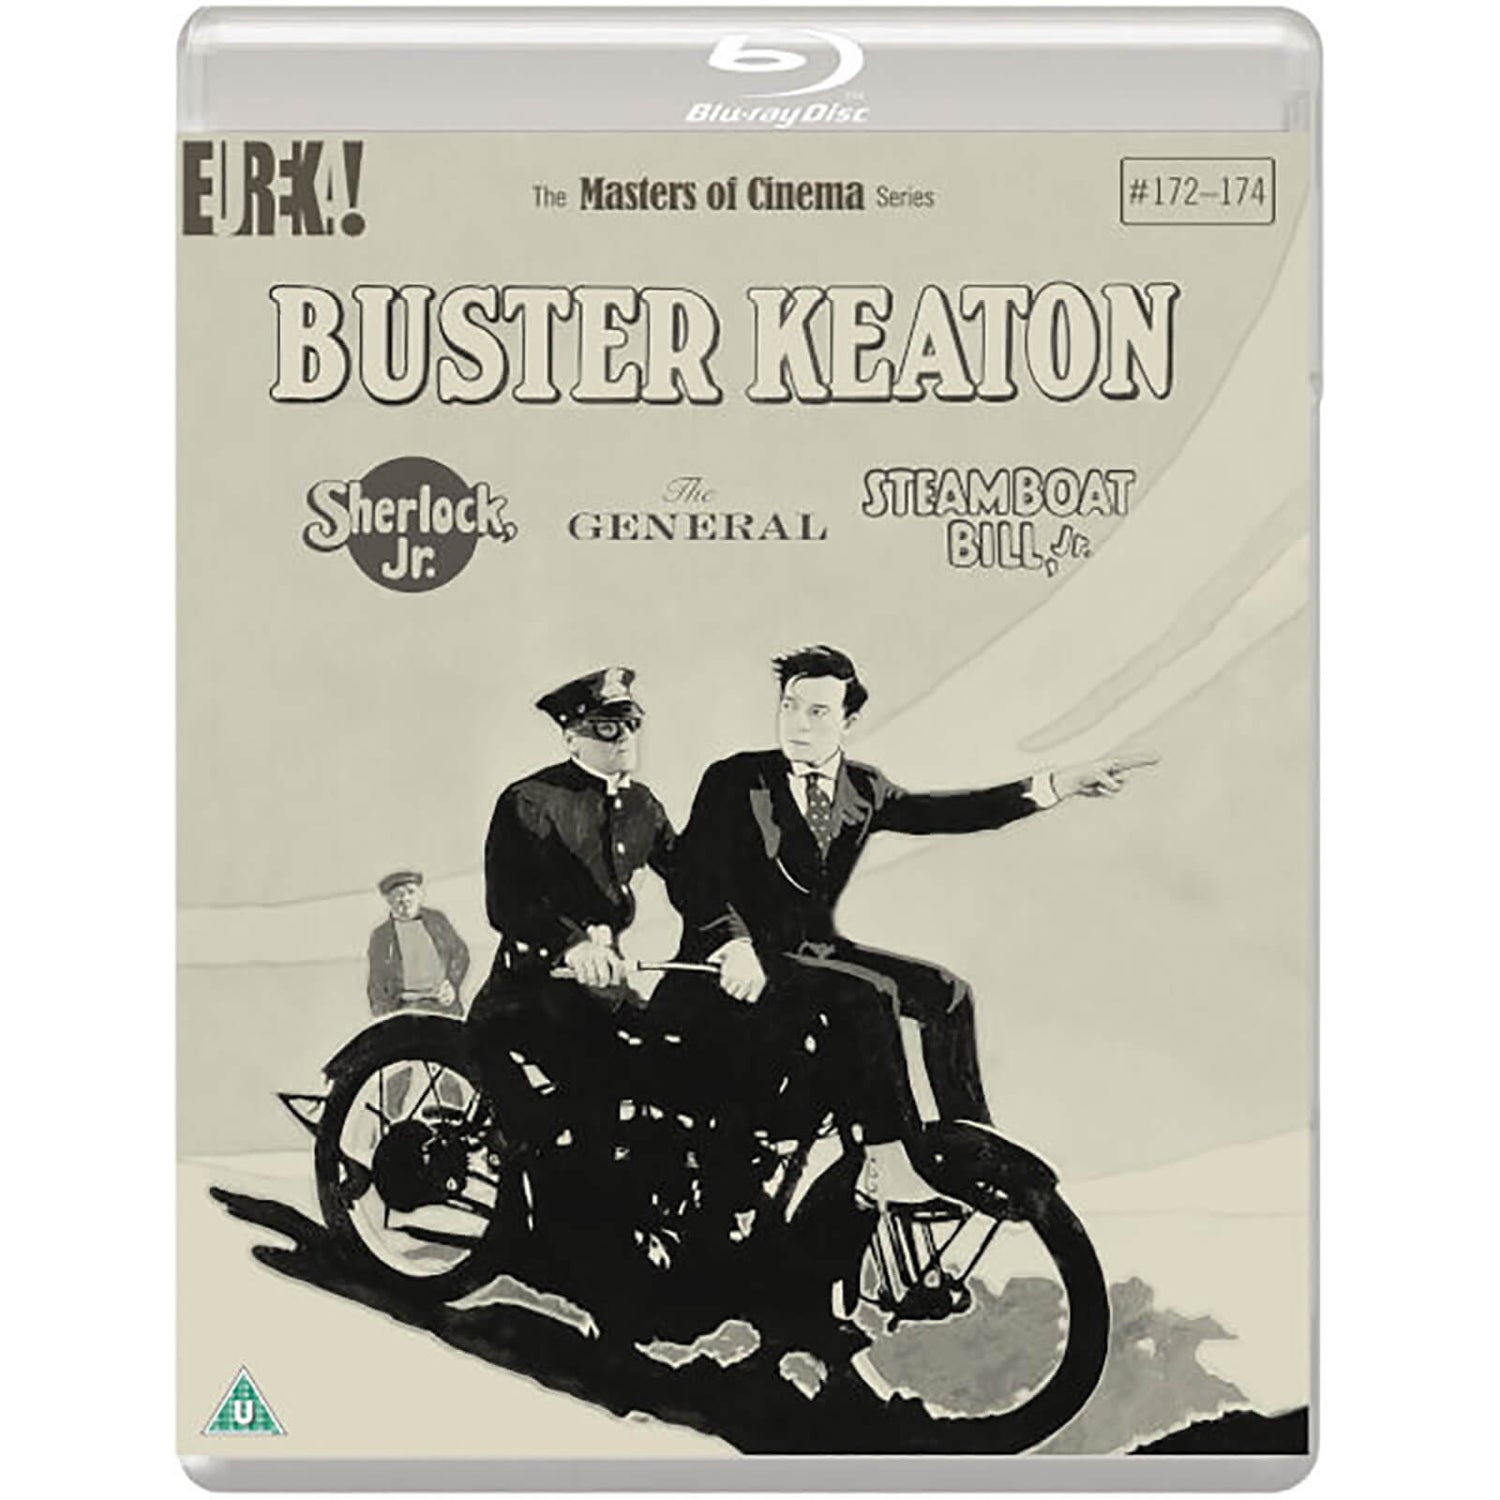 Buster Keaton: 3 Filme (Sherlock, Jr., Der General, Steamboat Bill, Jr.) [Masters Of Cinema] limitierte Auflage Blu-Ray